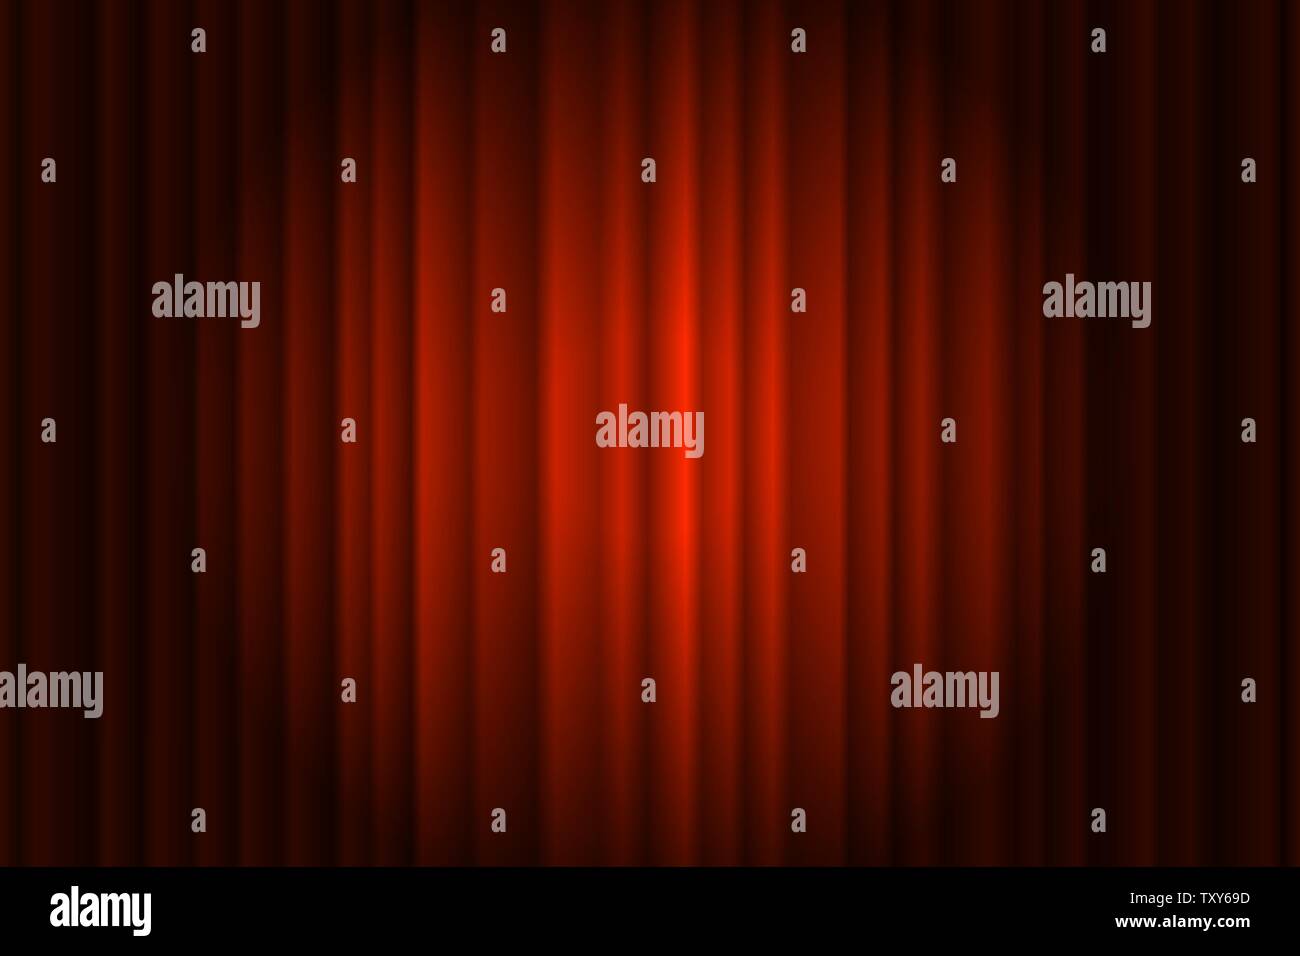 Geschlossen seidigen Luxus rot Kino Vorhang der Bühne Hintergrund spotlight Strahl beleuchtet. Theatralische Vorhänge. Vektor Farbverlauf Abbildung Stock Vektor